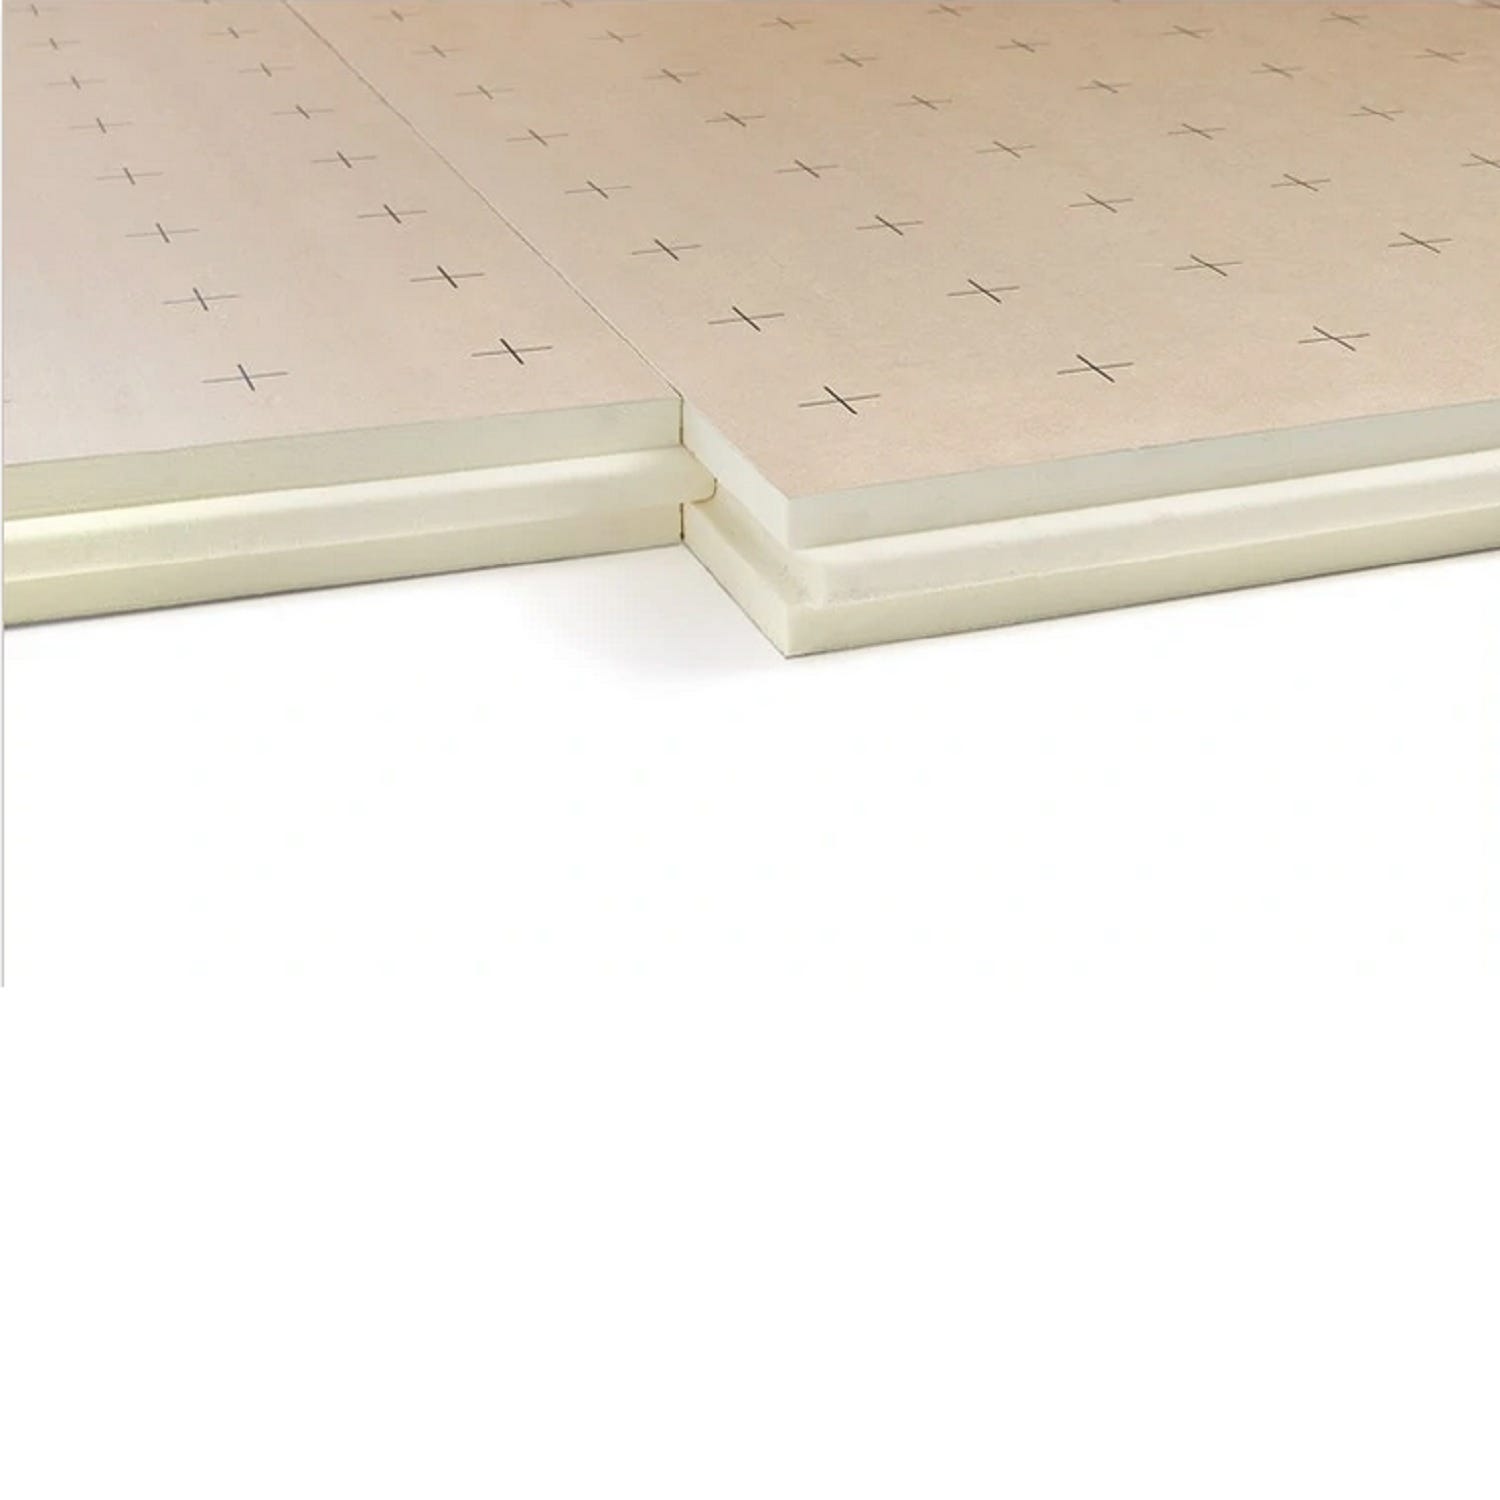 Dalle plancher chauffant épaisseur 103 millimètres R4.65 - paquet de 4 dalles - 4.8 m2 2